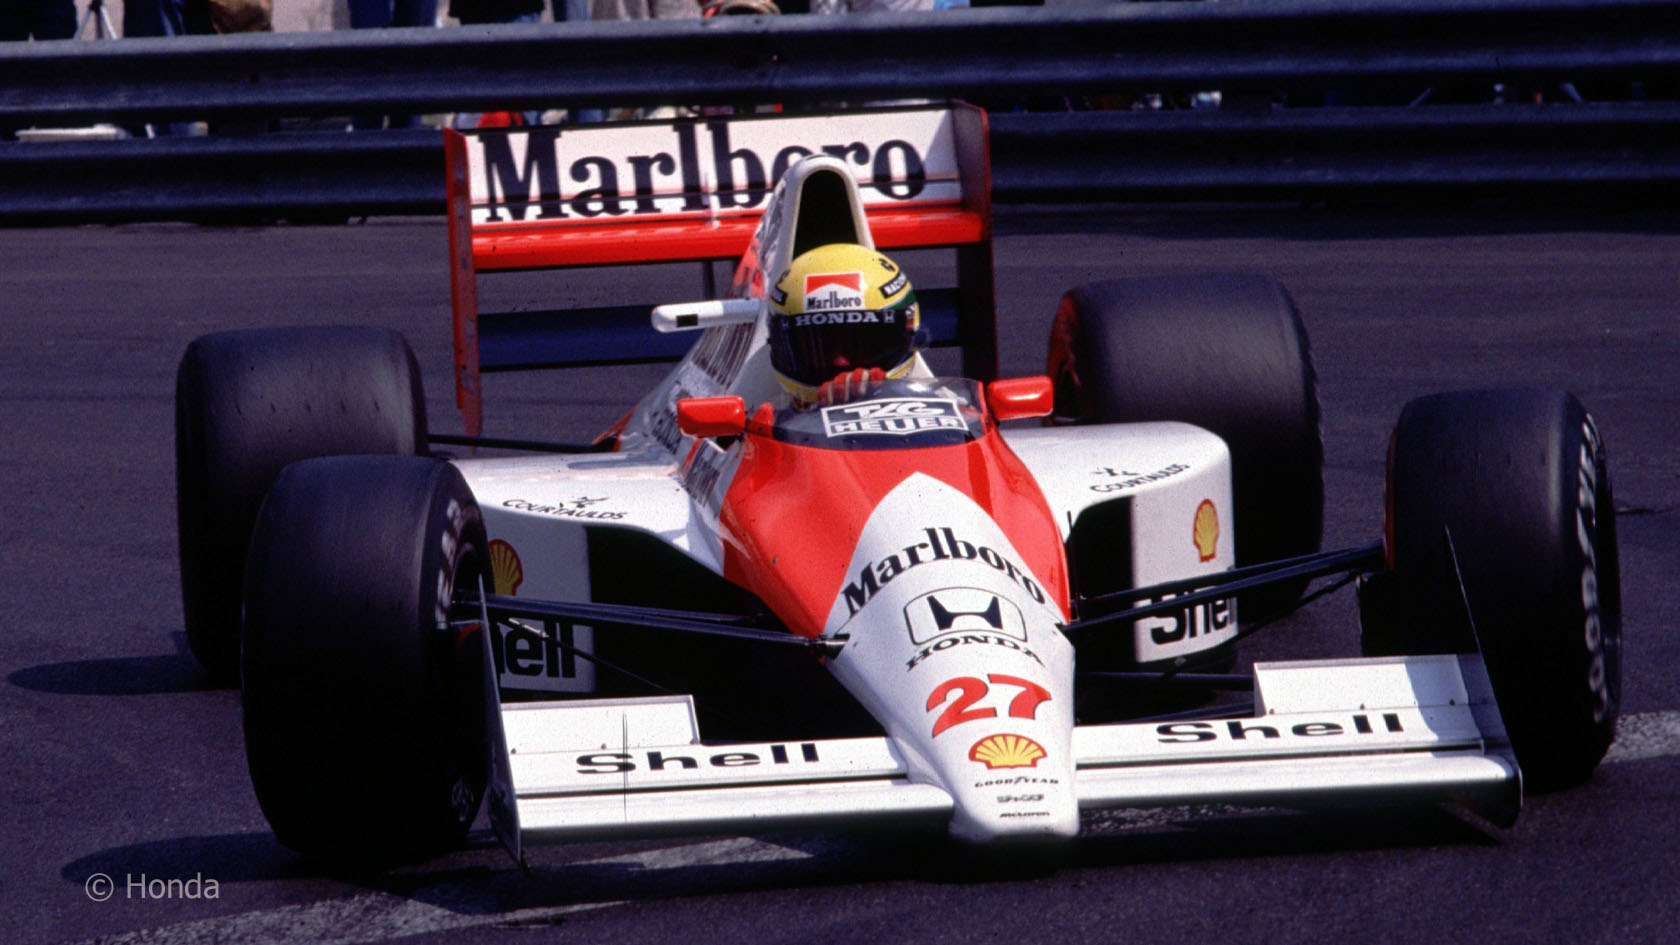 Mclaren F1 1990 photo - 2